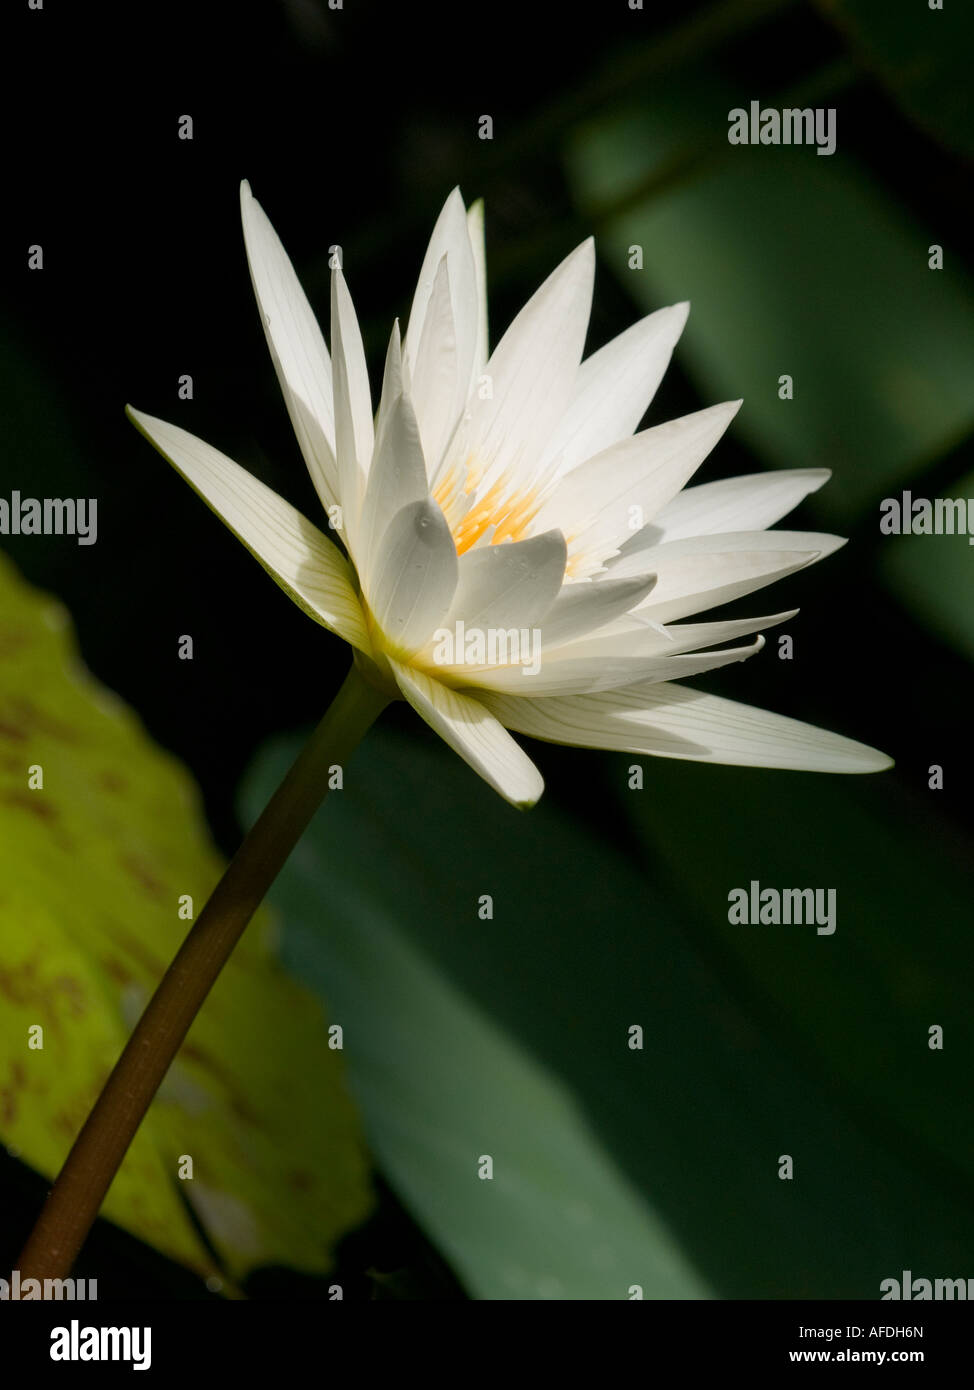 Sunlit single white water lily flower Nymphaea plante aquatique subtropical Banque D'Images